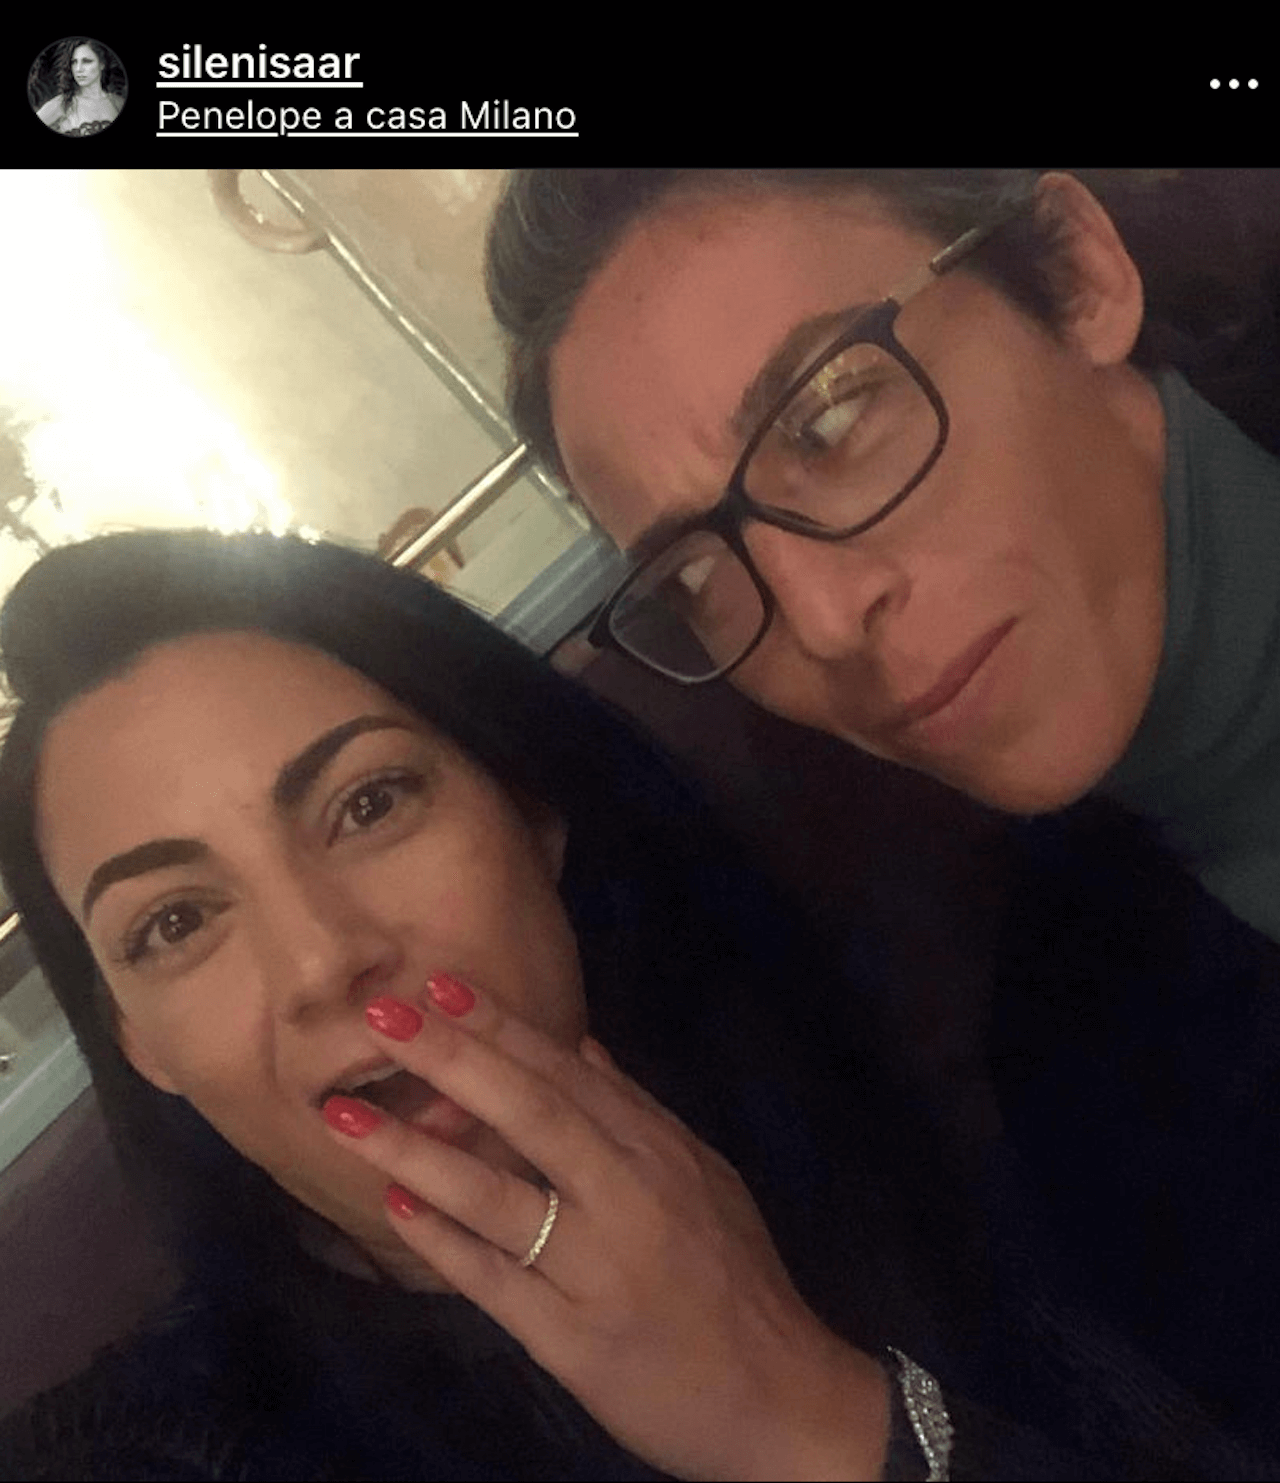 Francesca Schiavone festeggia San Valentino con l’amata Sileni: “Sempre insieme” - Francesca Schiavone e Sileni 1 - Gay.it